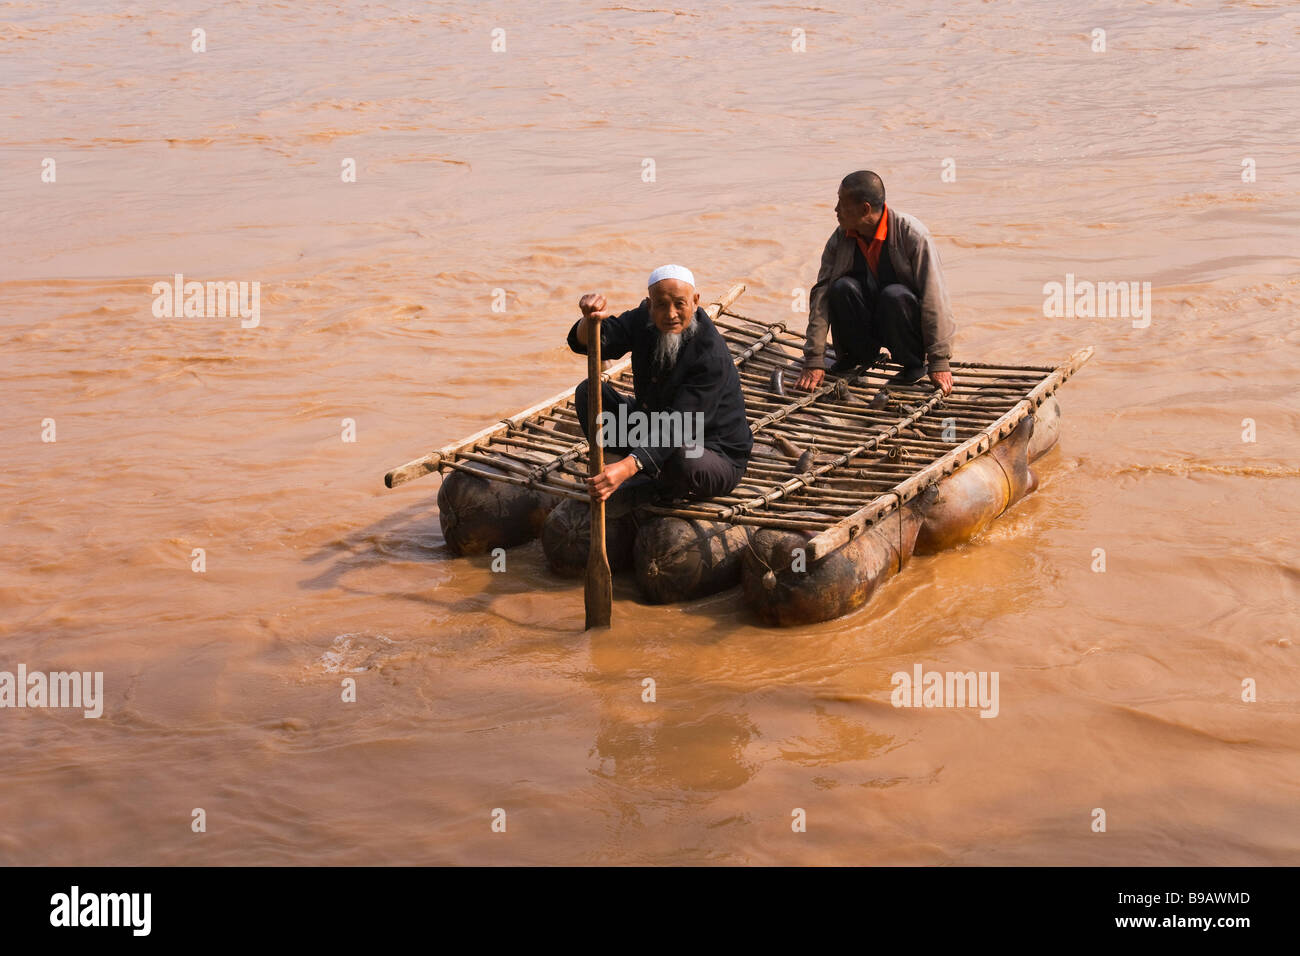 Sala ethnische Minderheit Mann muslimischen rafting auf schwimmenden Blase der Schafe Haut als schwimmenden Floß Yellow River China verwendet Stockfoto